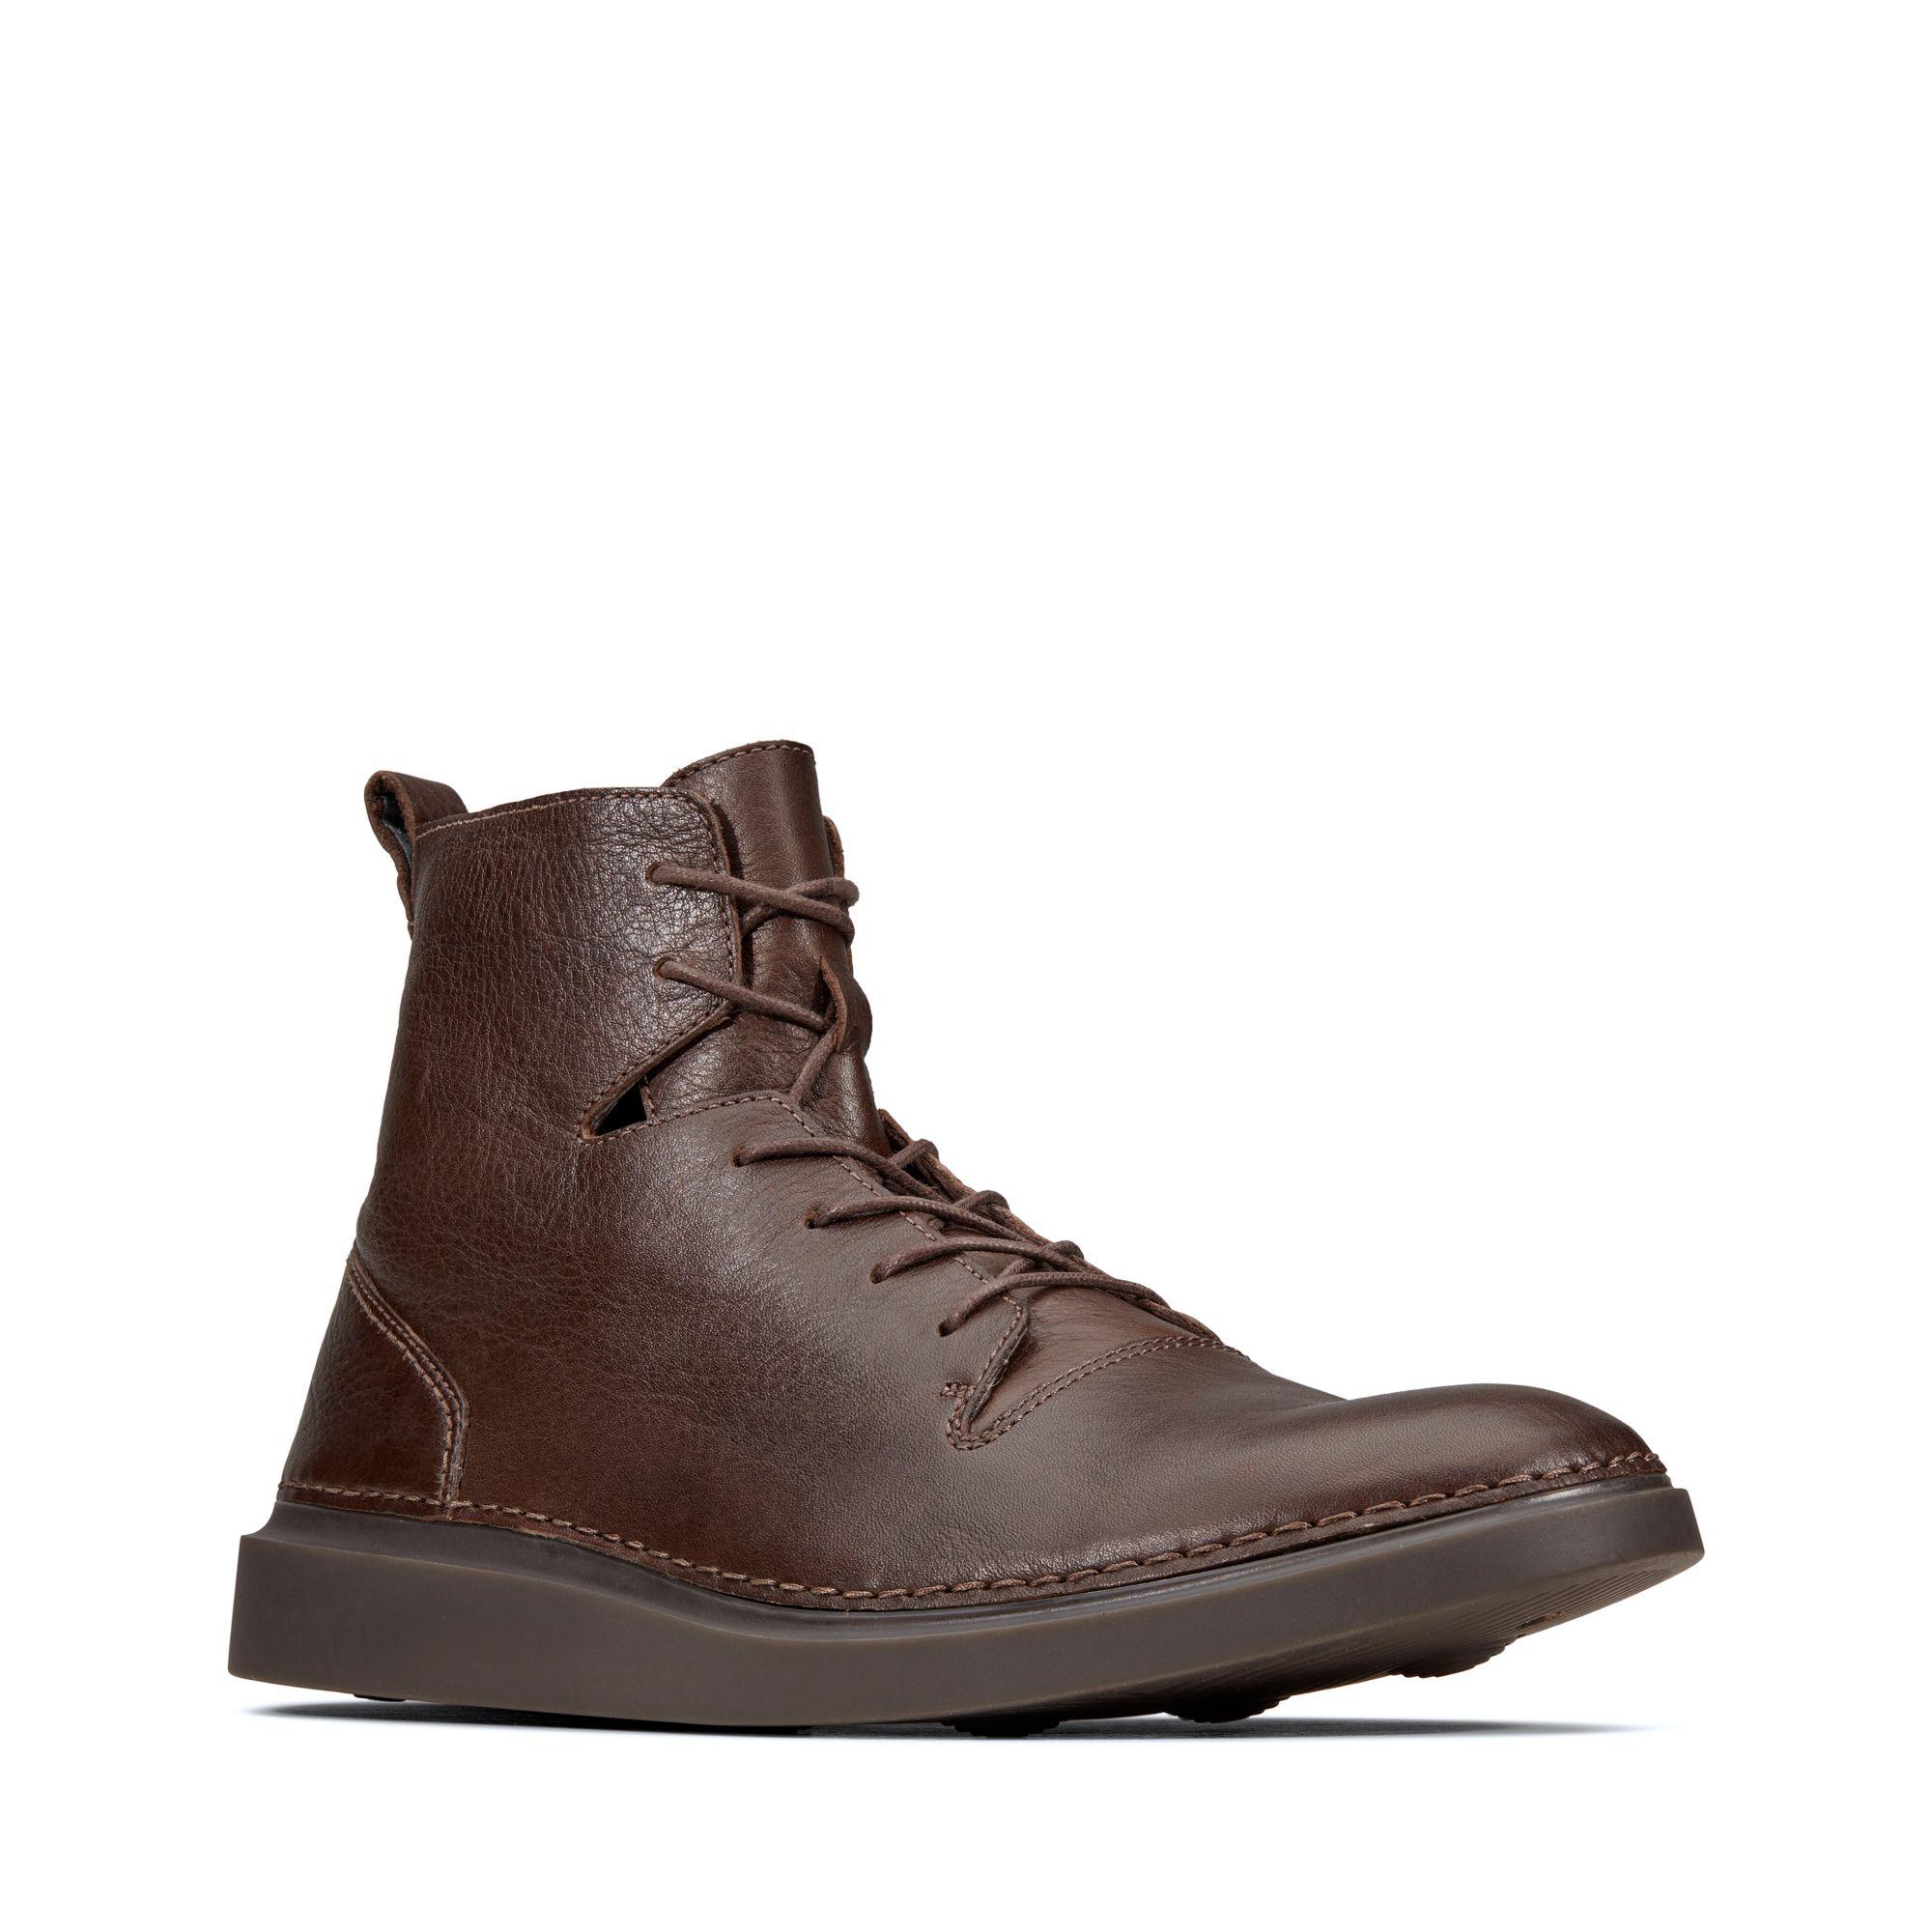 clarks men's hale rise classic boots 